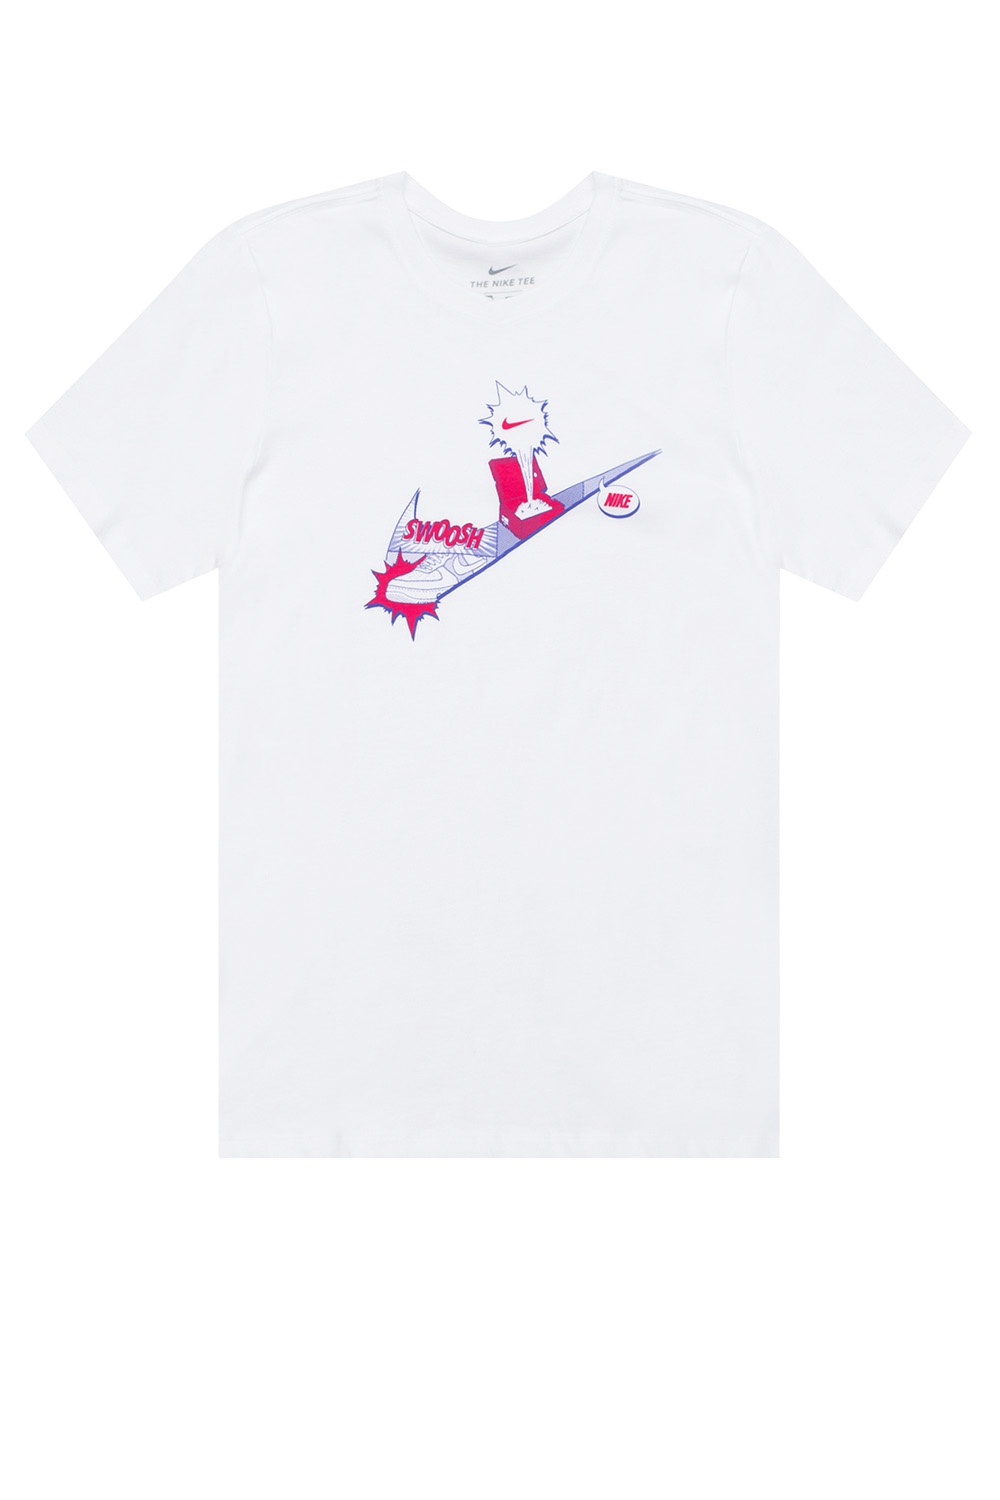 IetpShops Nepal - White Logo free max Nike 2017 lawsuits mesh printable - nike air - cool T shirt cool